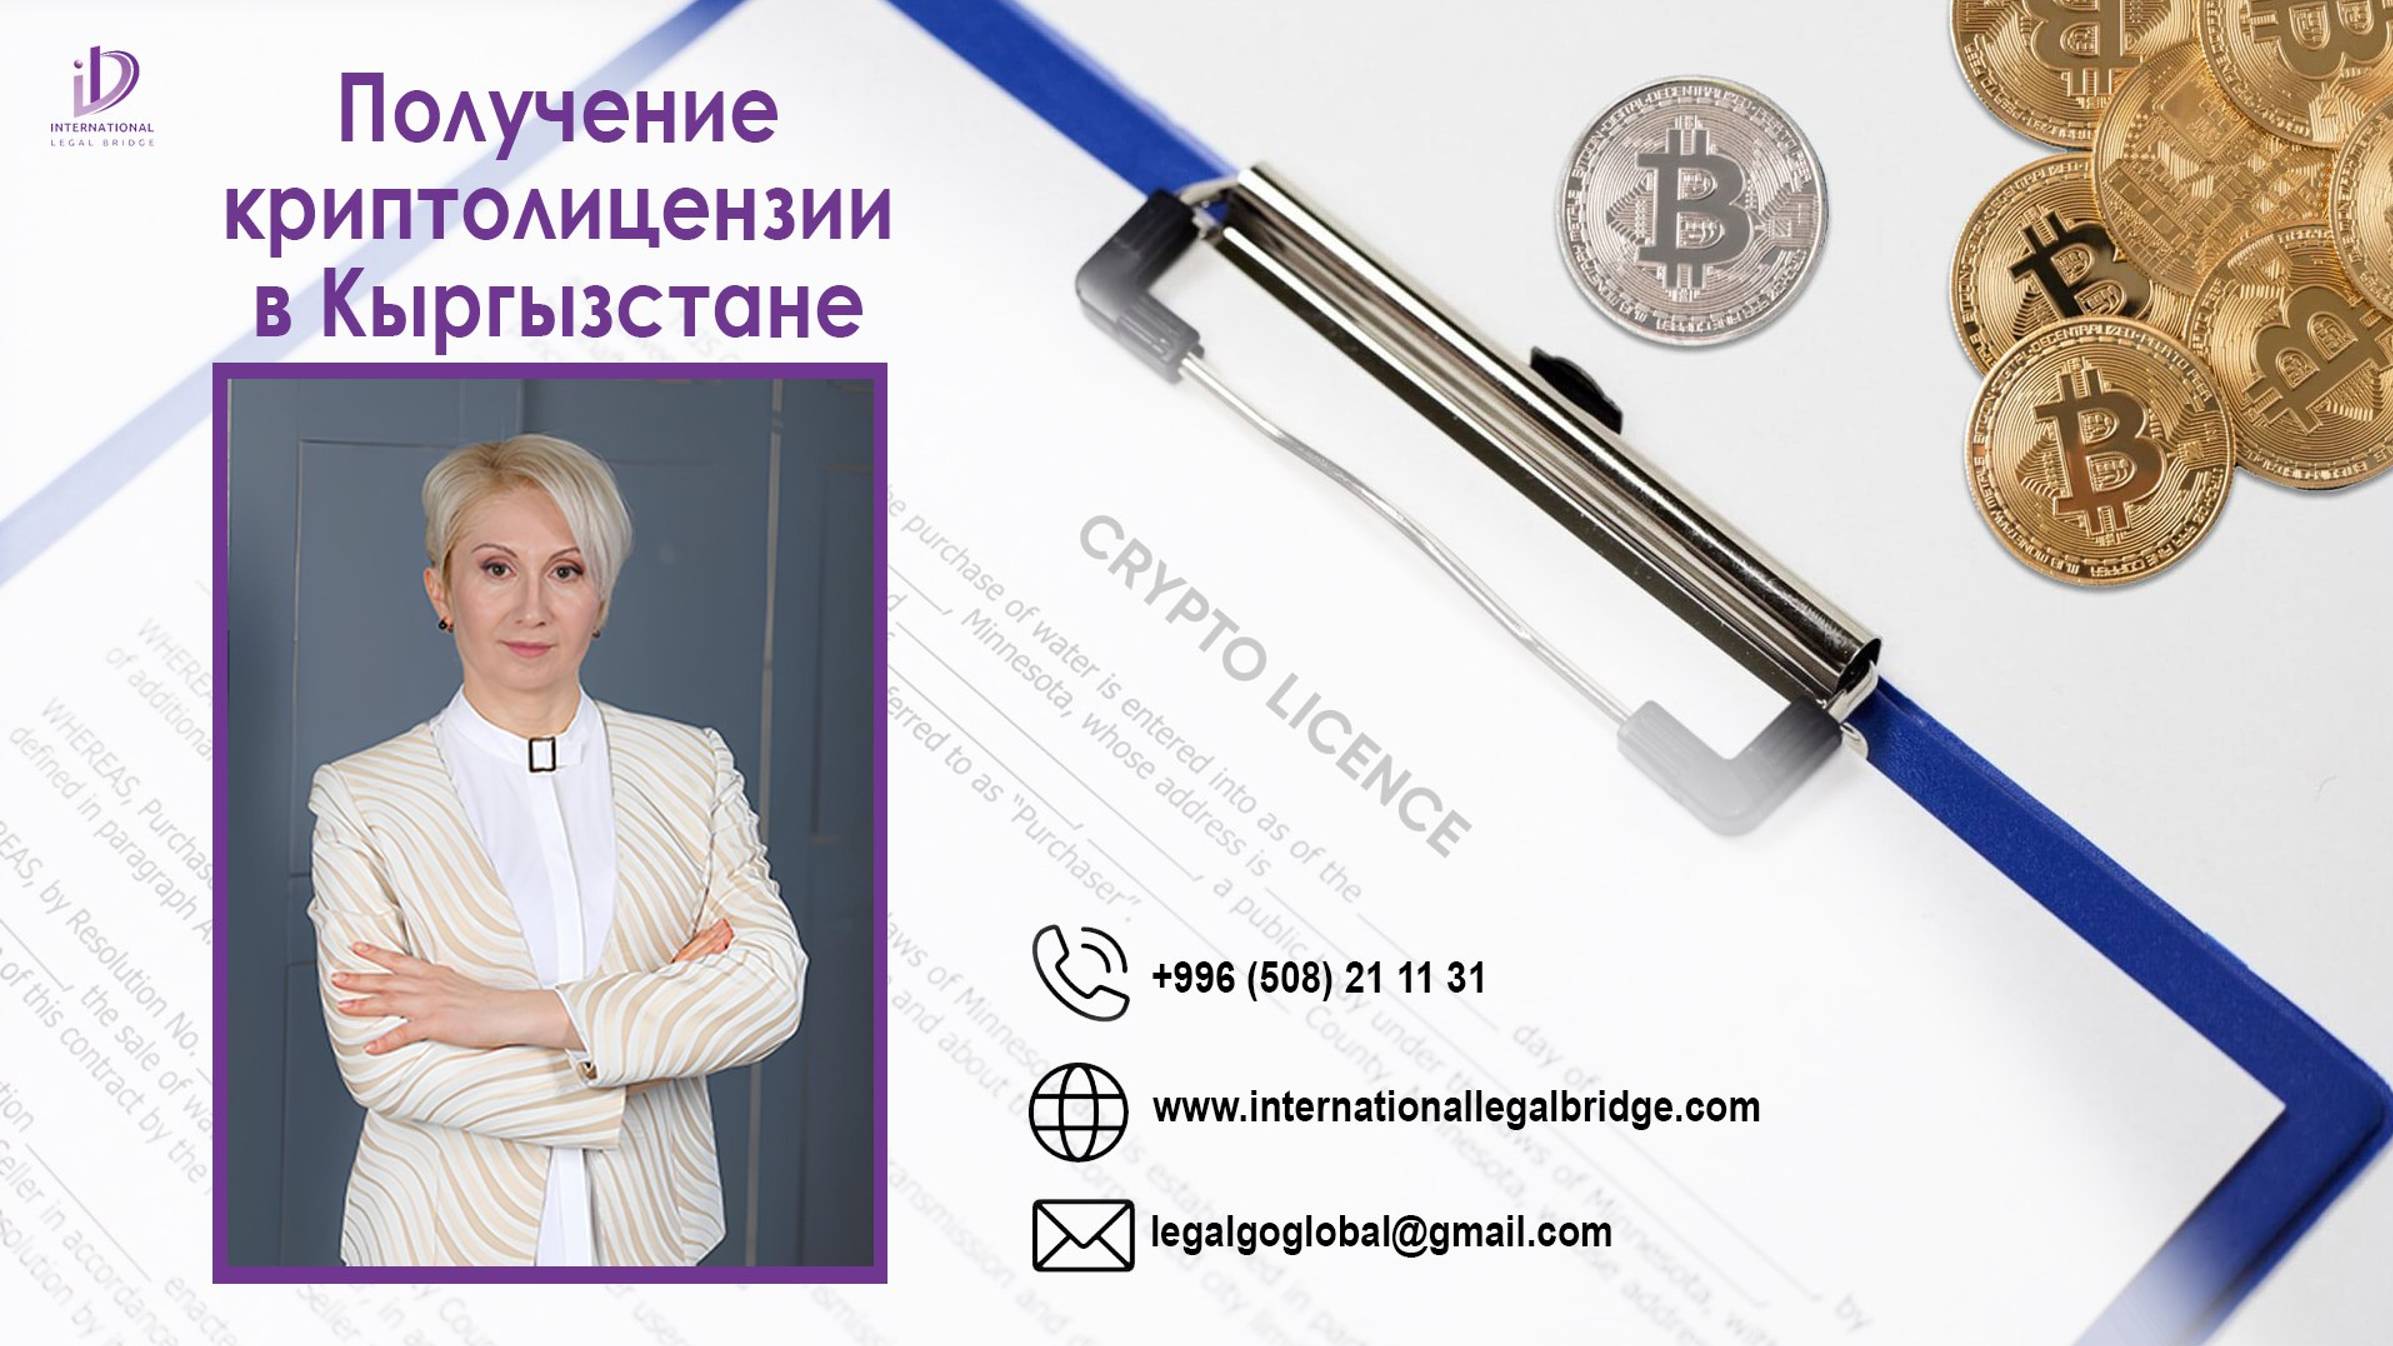 Получение криптолицензии в Кыргызстане.
www.internationallegalbridge.com